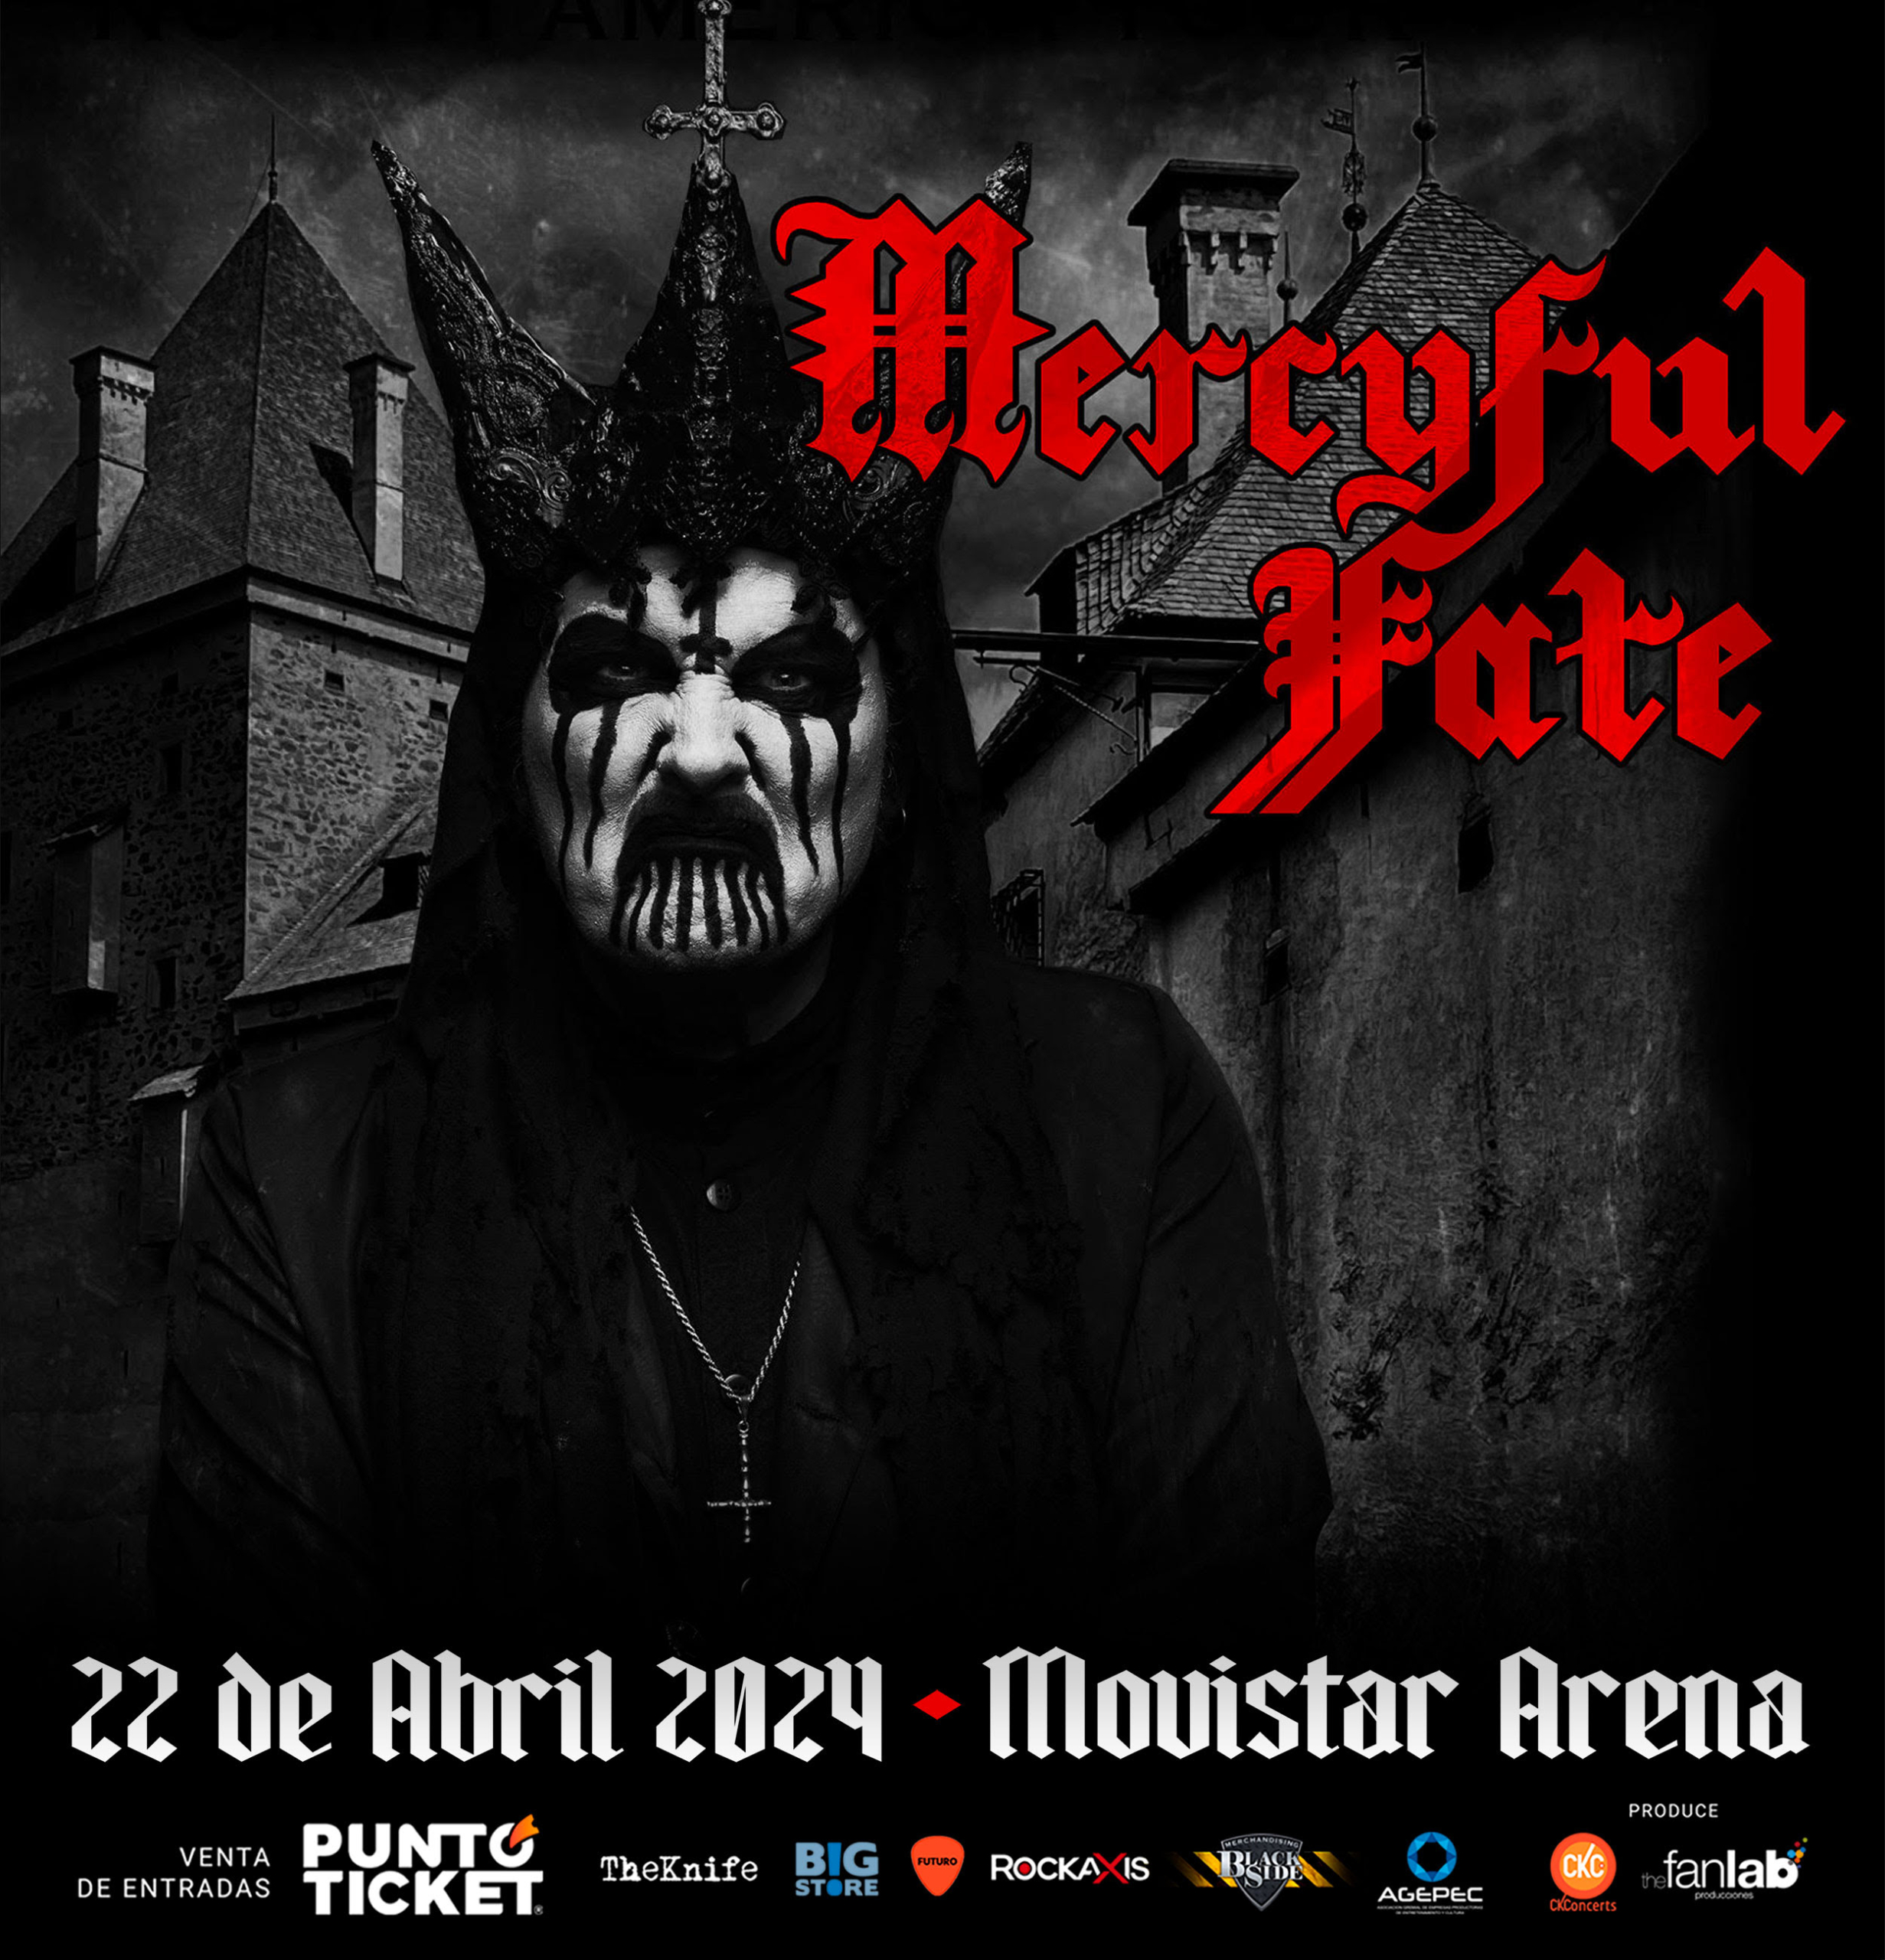 Después de 25 años de espera Mercyful Fate aterrizará en Chile